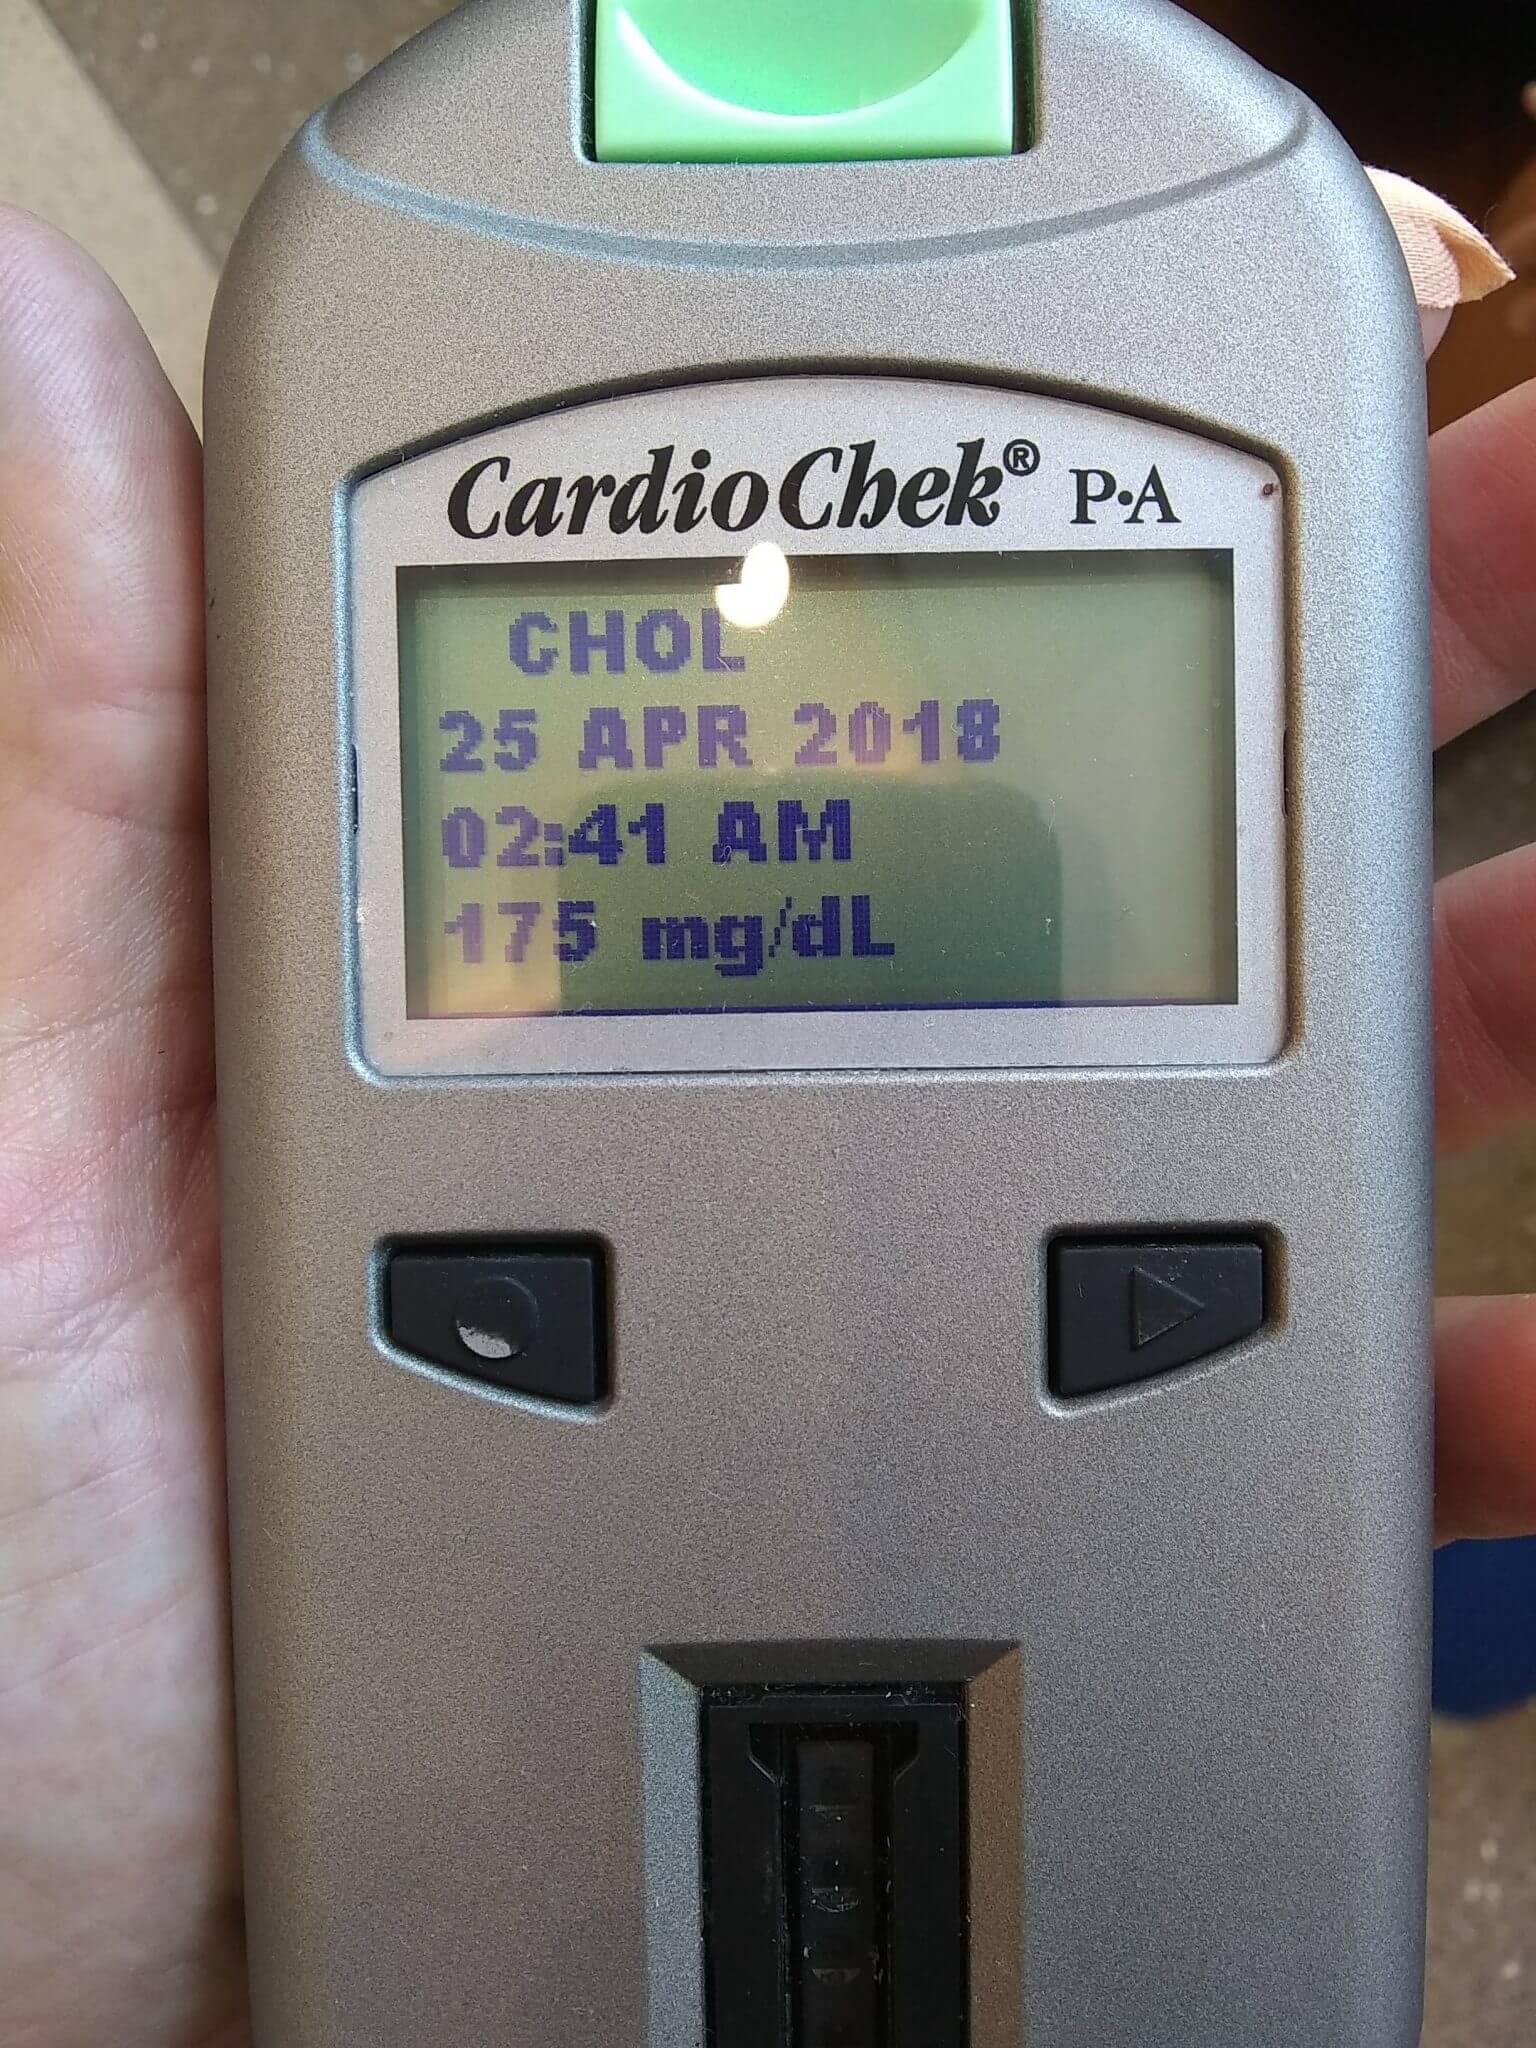 Cholesterol at 175